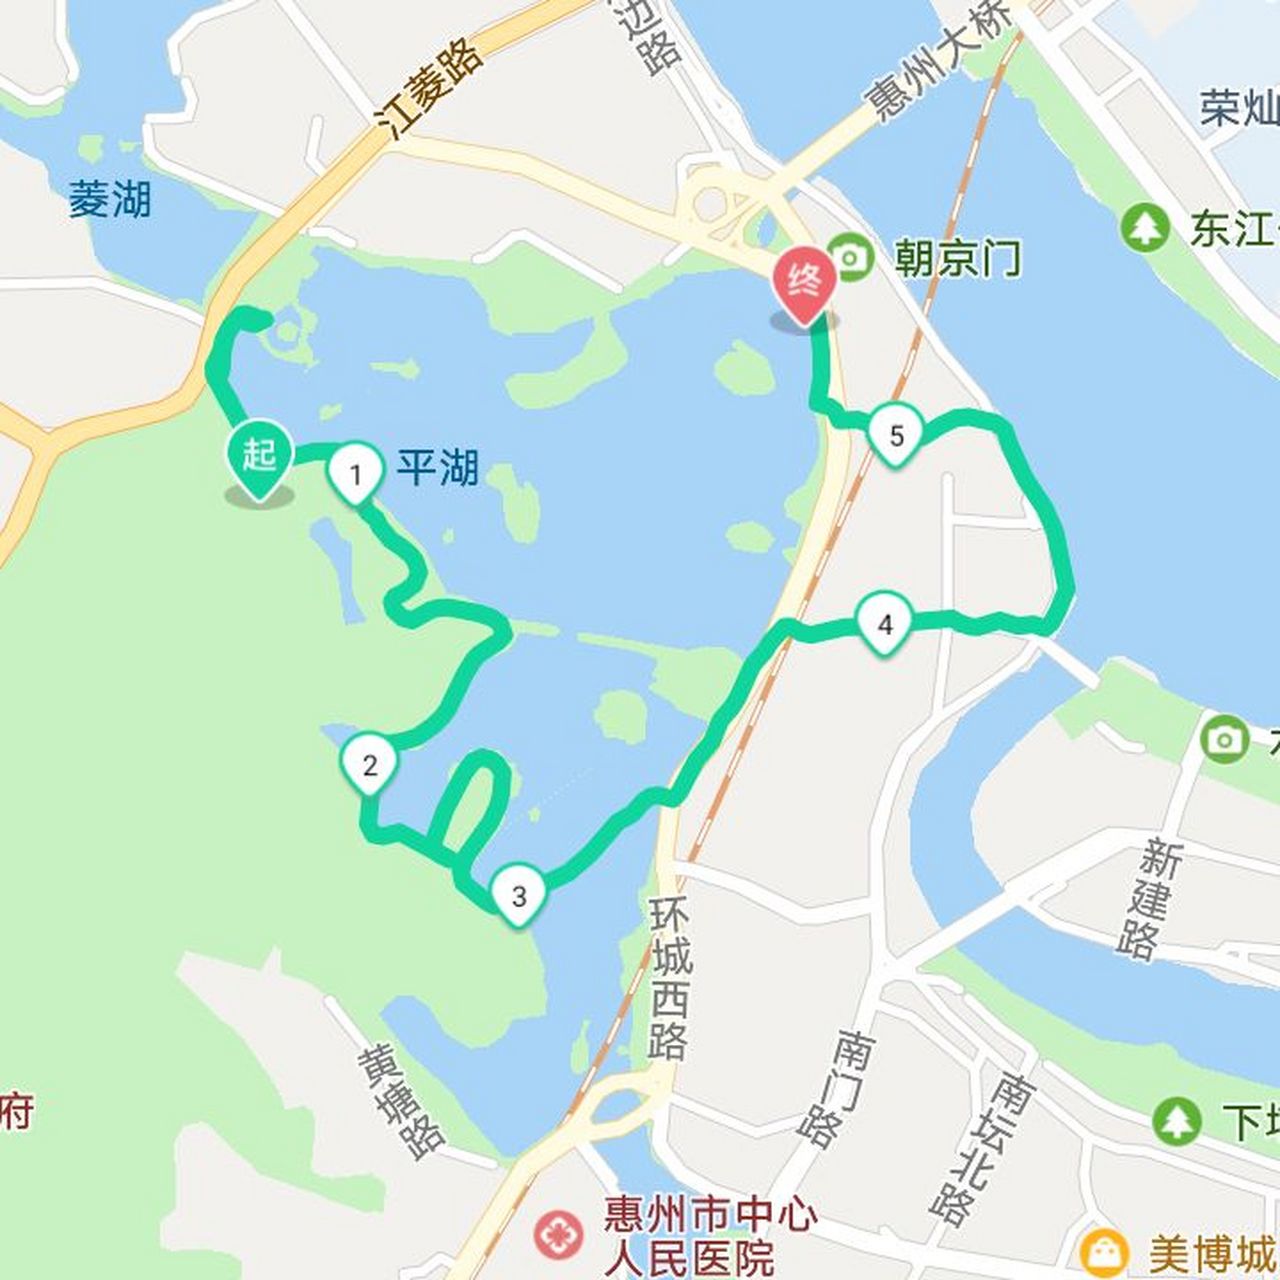 惠州西湖一日游攻略  简介:杭州有西湖,惠州也有西湖!